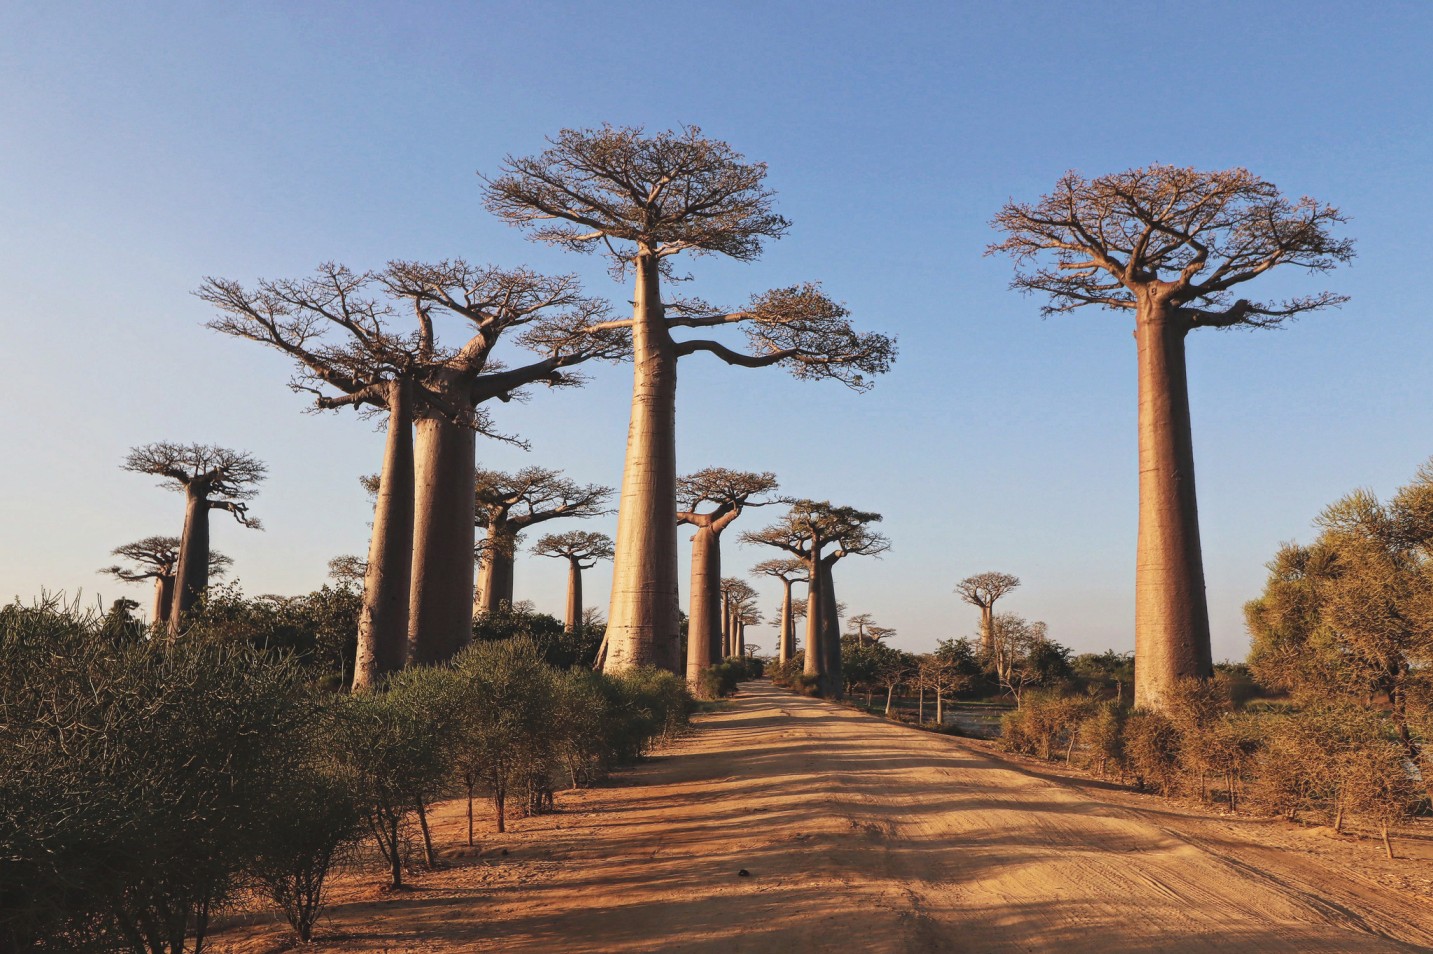 Grandidiers baobab